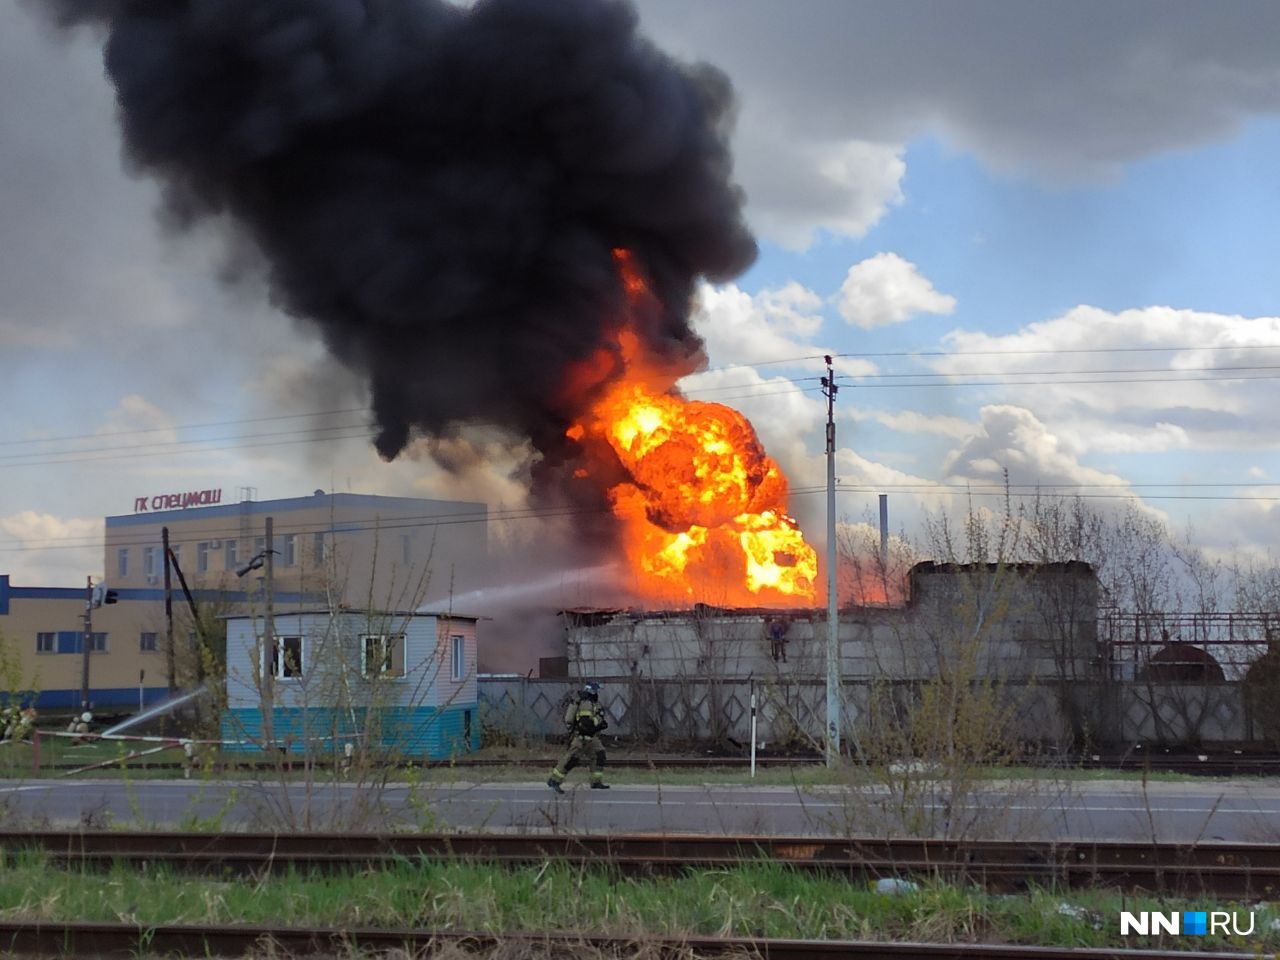 Пожар в промзоне Дзержинска возник на территории «ЛД-Трейд». Компания продает ацетон и другие растворители